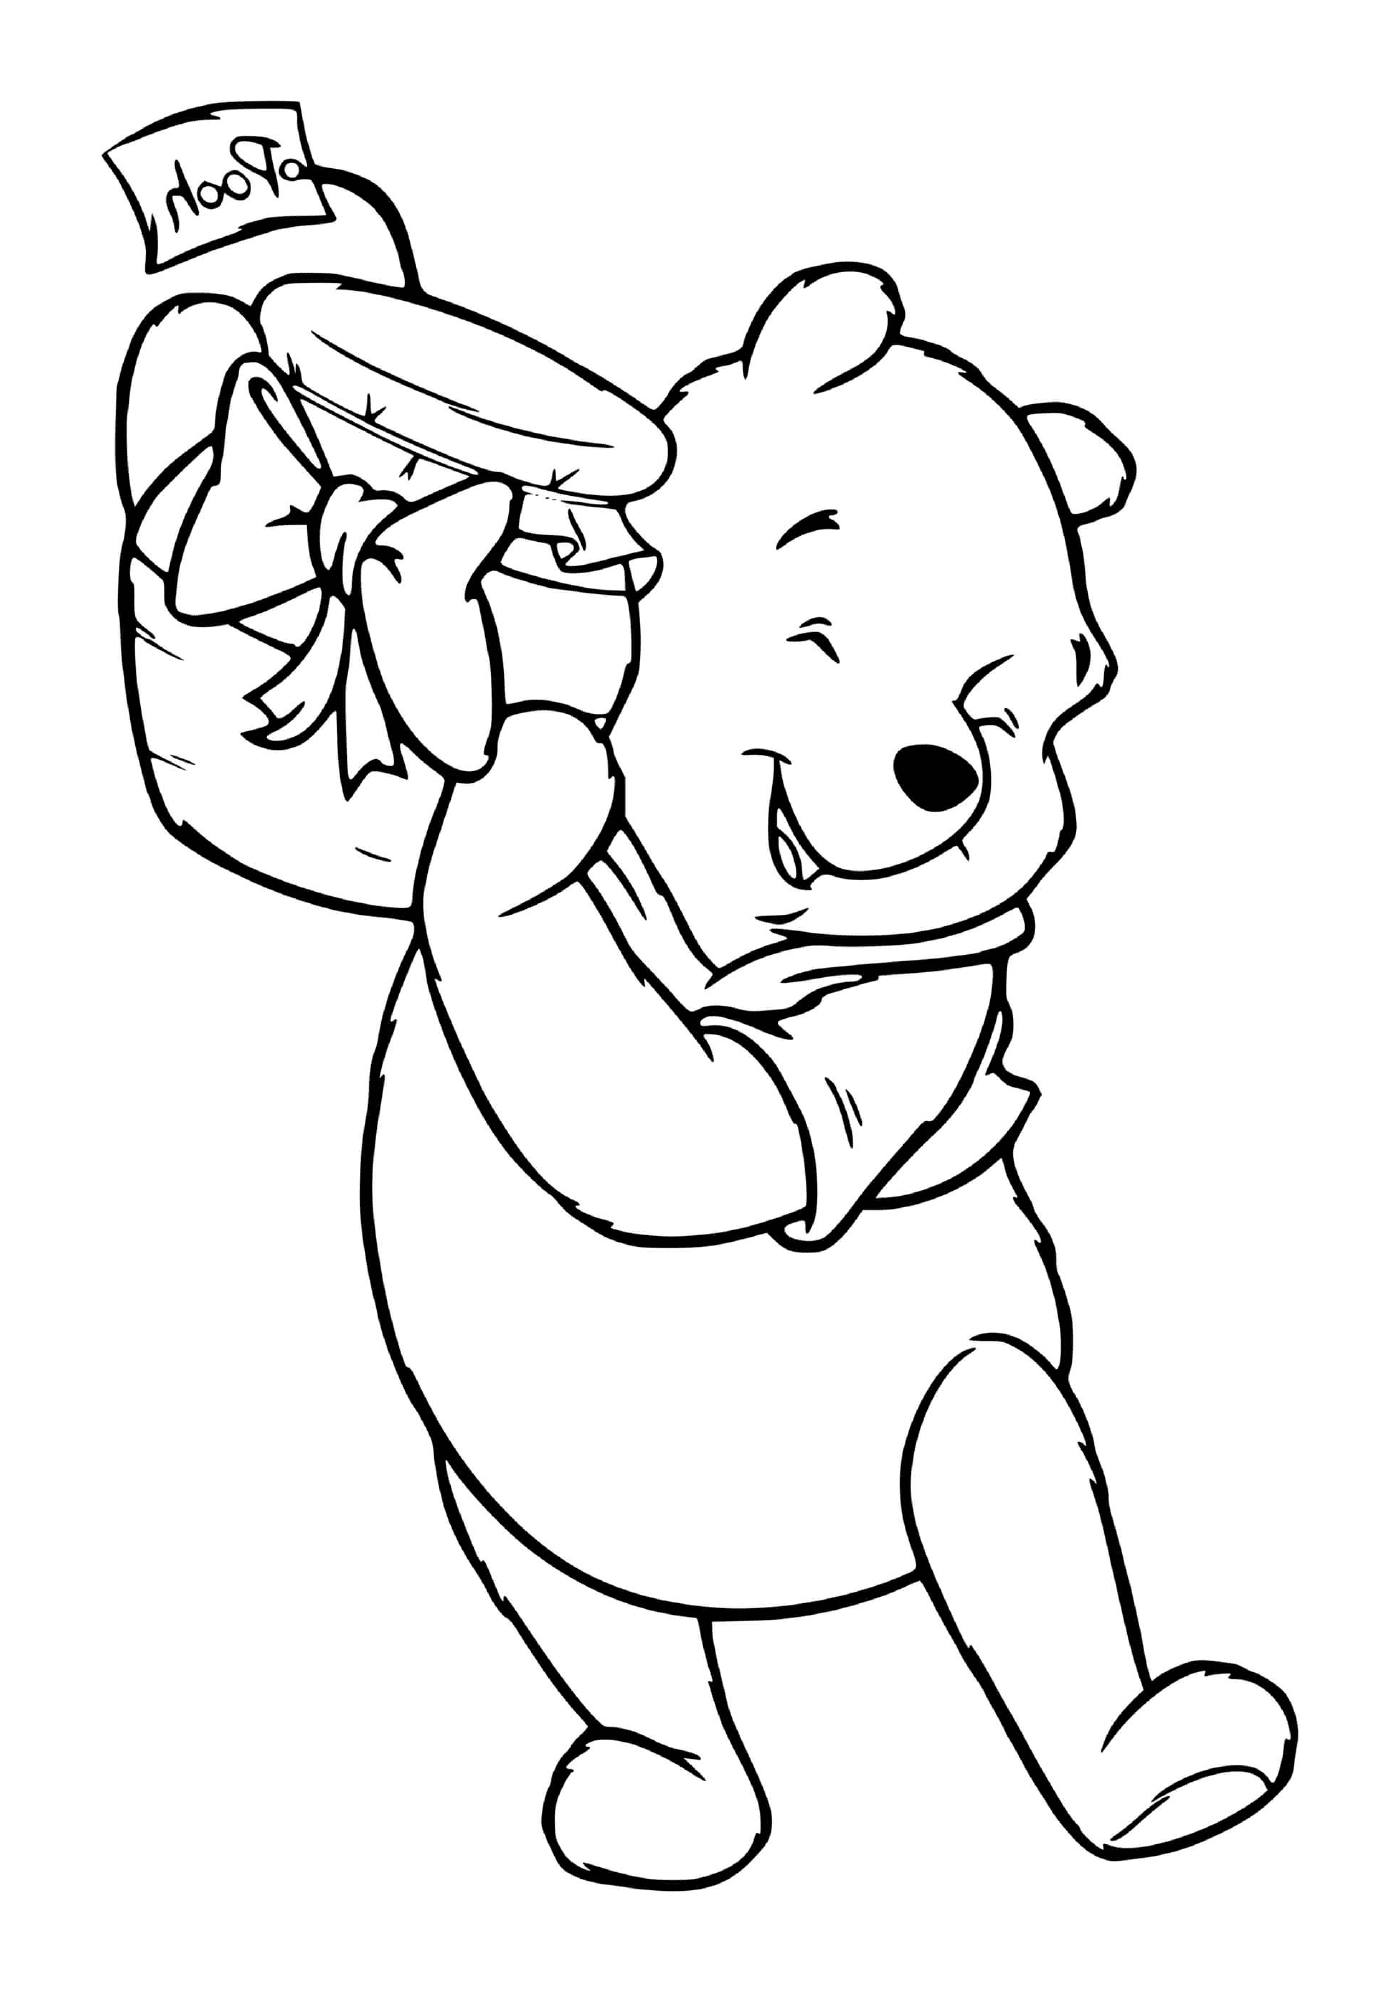  Winnie o urso com um presente 